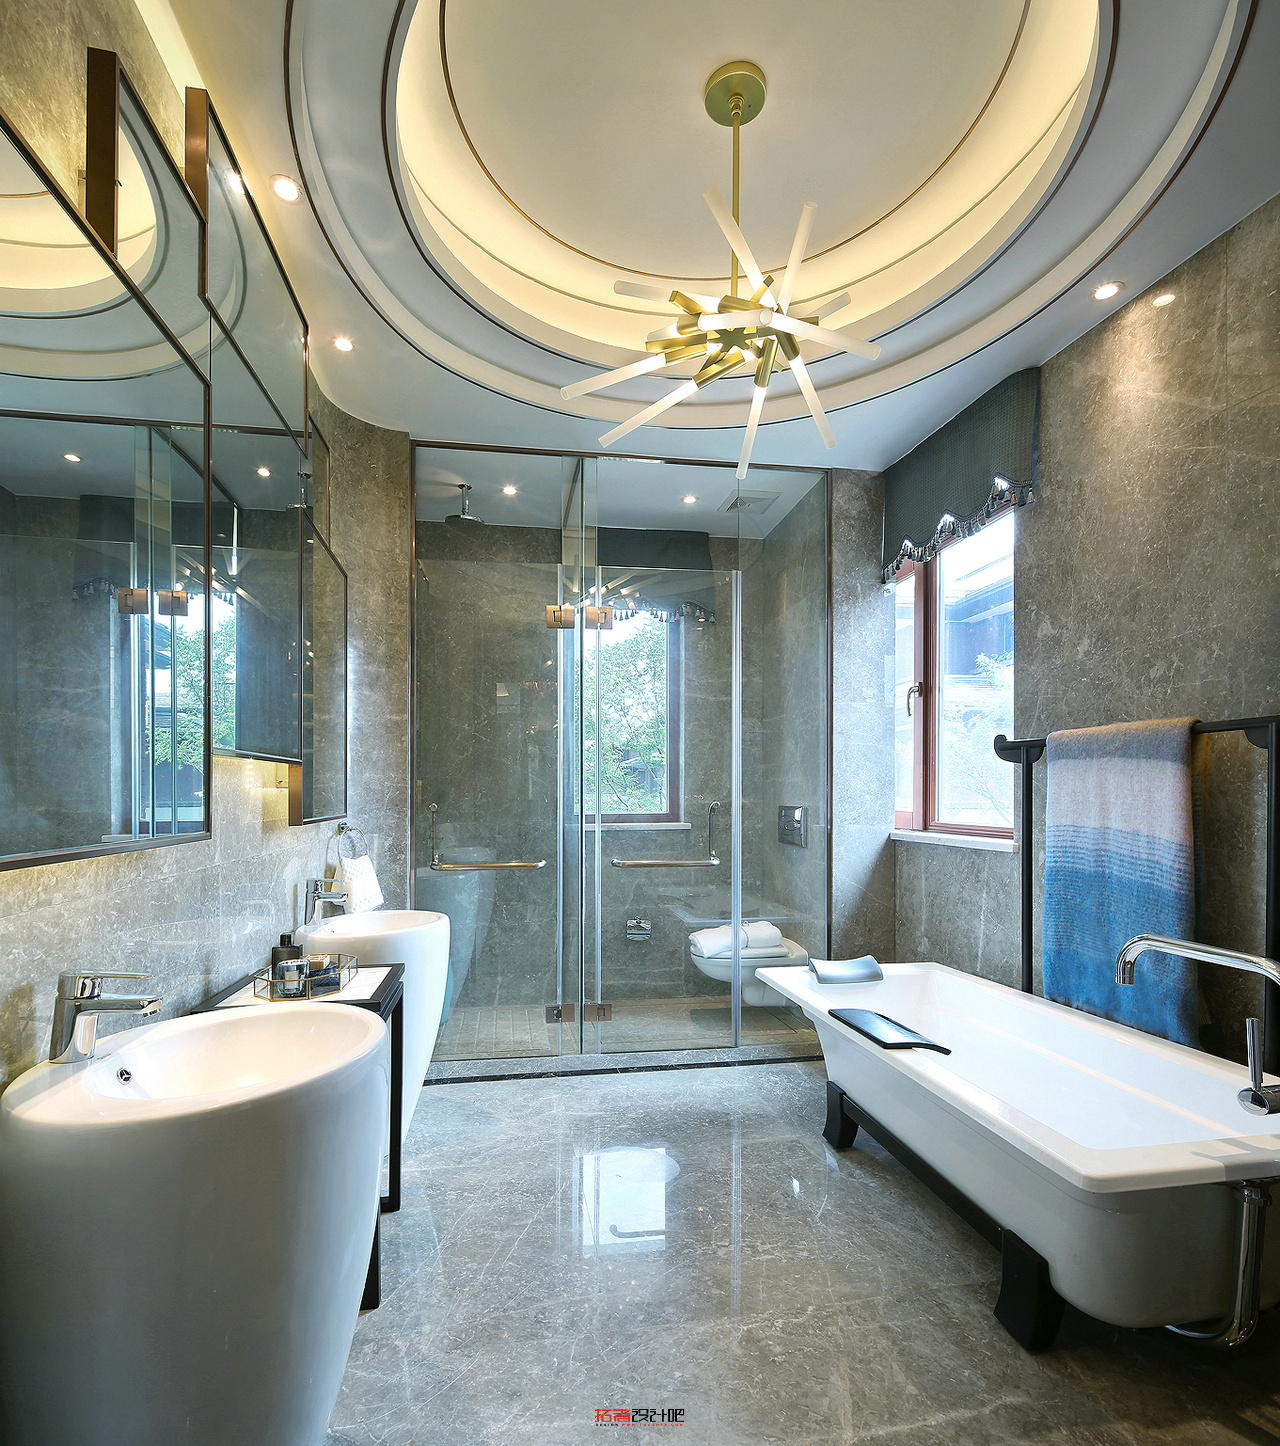 卫浴空间在光影的映照下，呈现出俊雅悠然的气息，给予业主者安闲自得的生活体验。